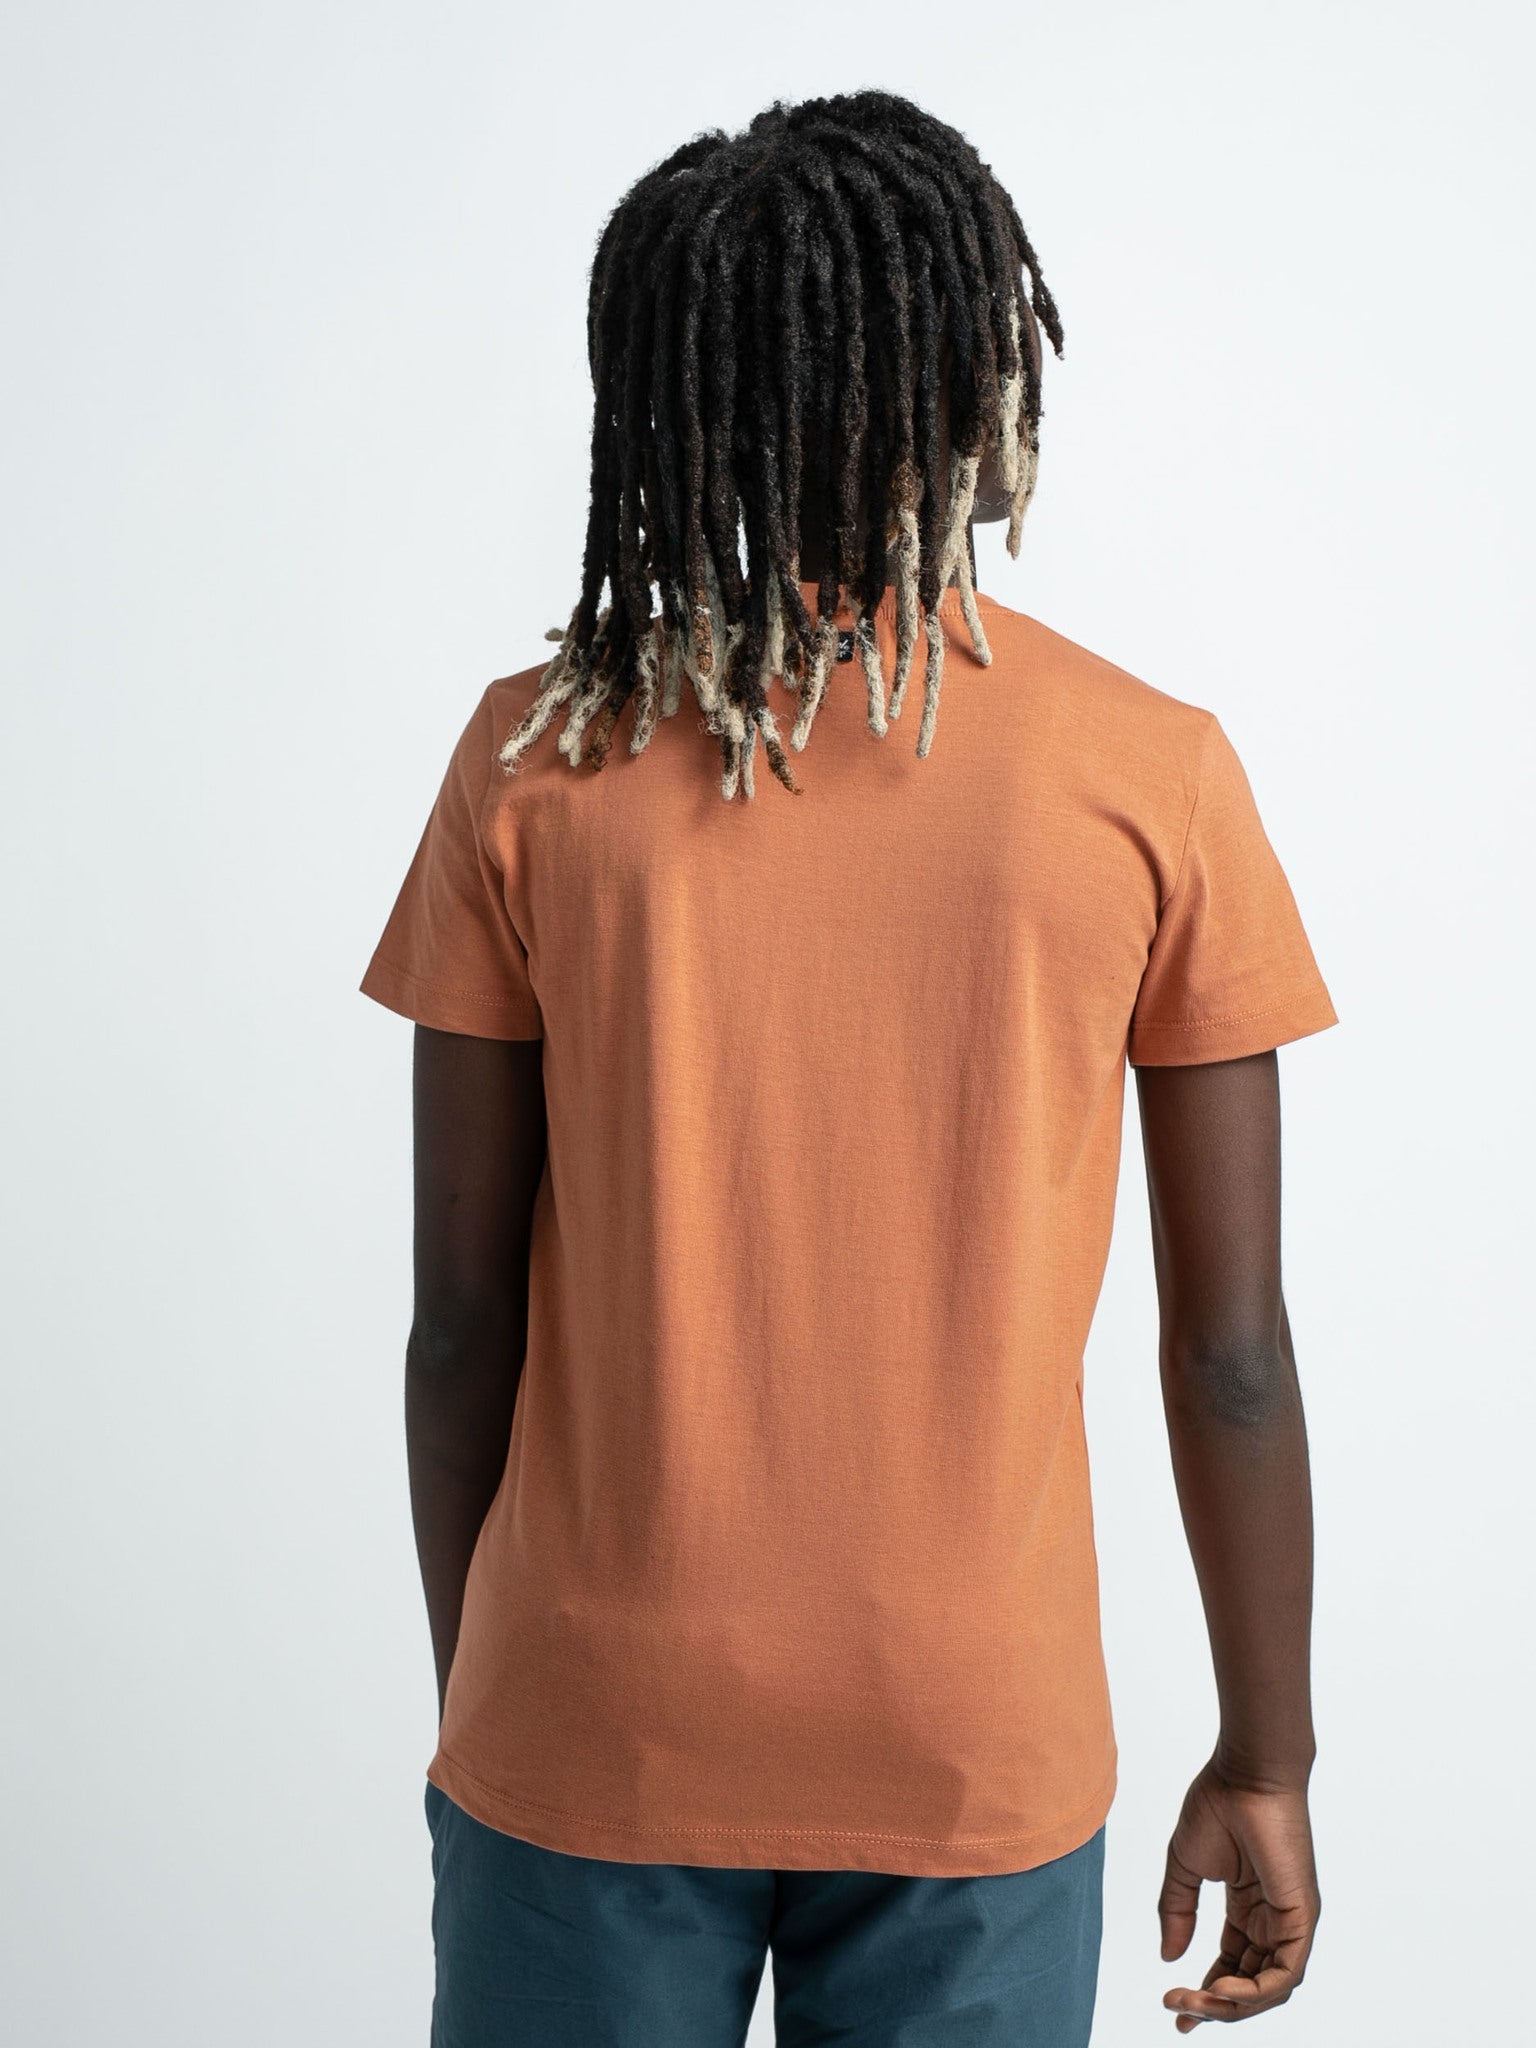 Jongens T-Shirt SS van Petrol in de kleur Desert Orange in maat 176.